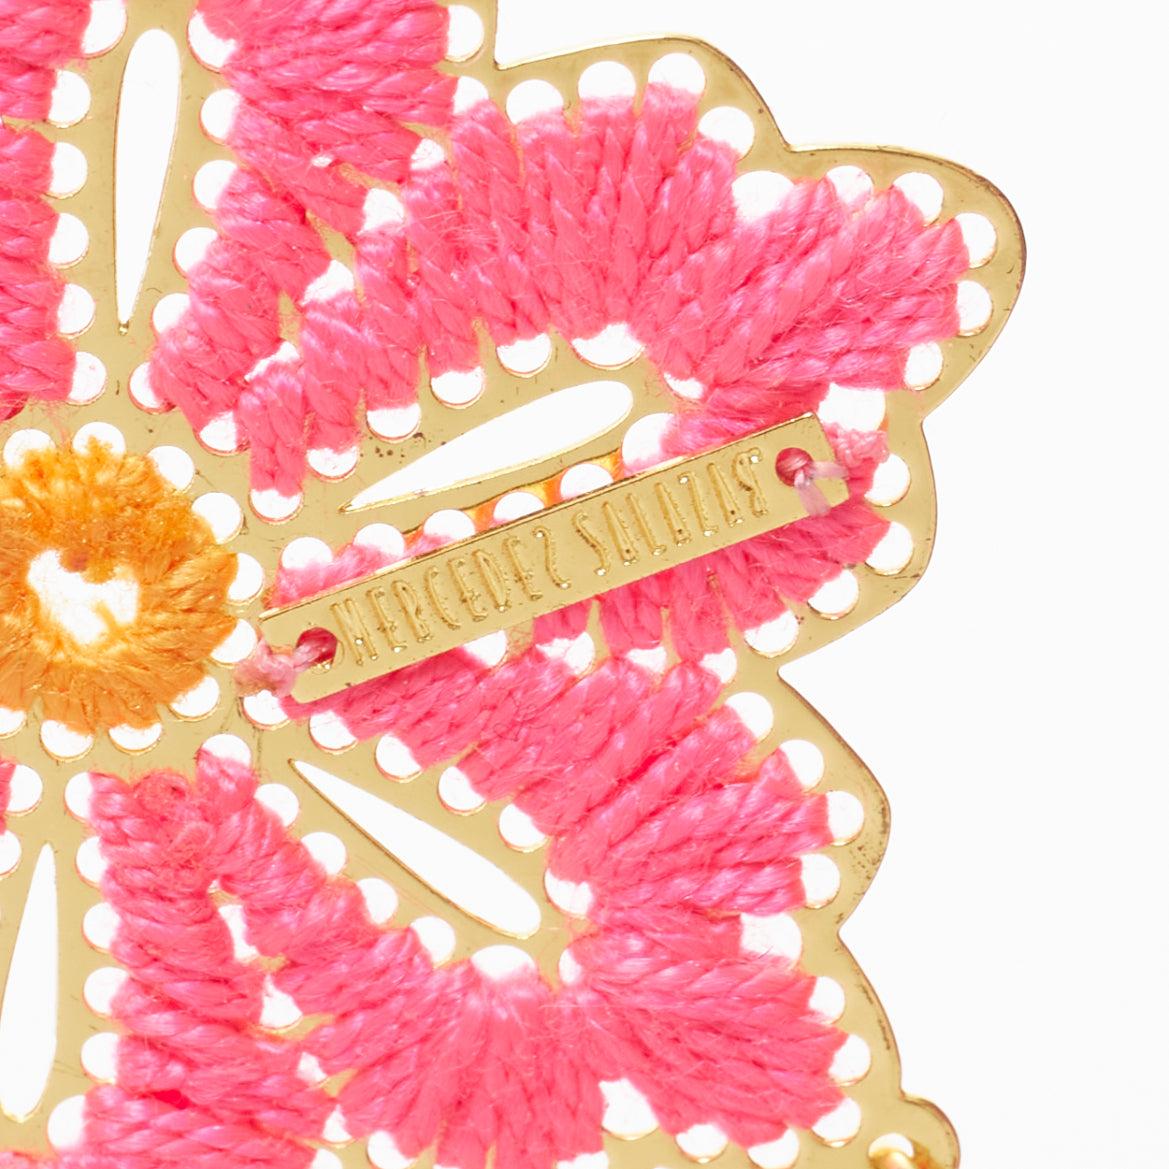 MERCEDES SALAZAR neon pink orange floral tassel gold clip on earrings For Sale 2